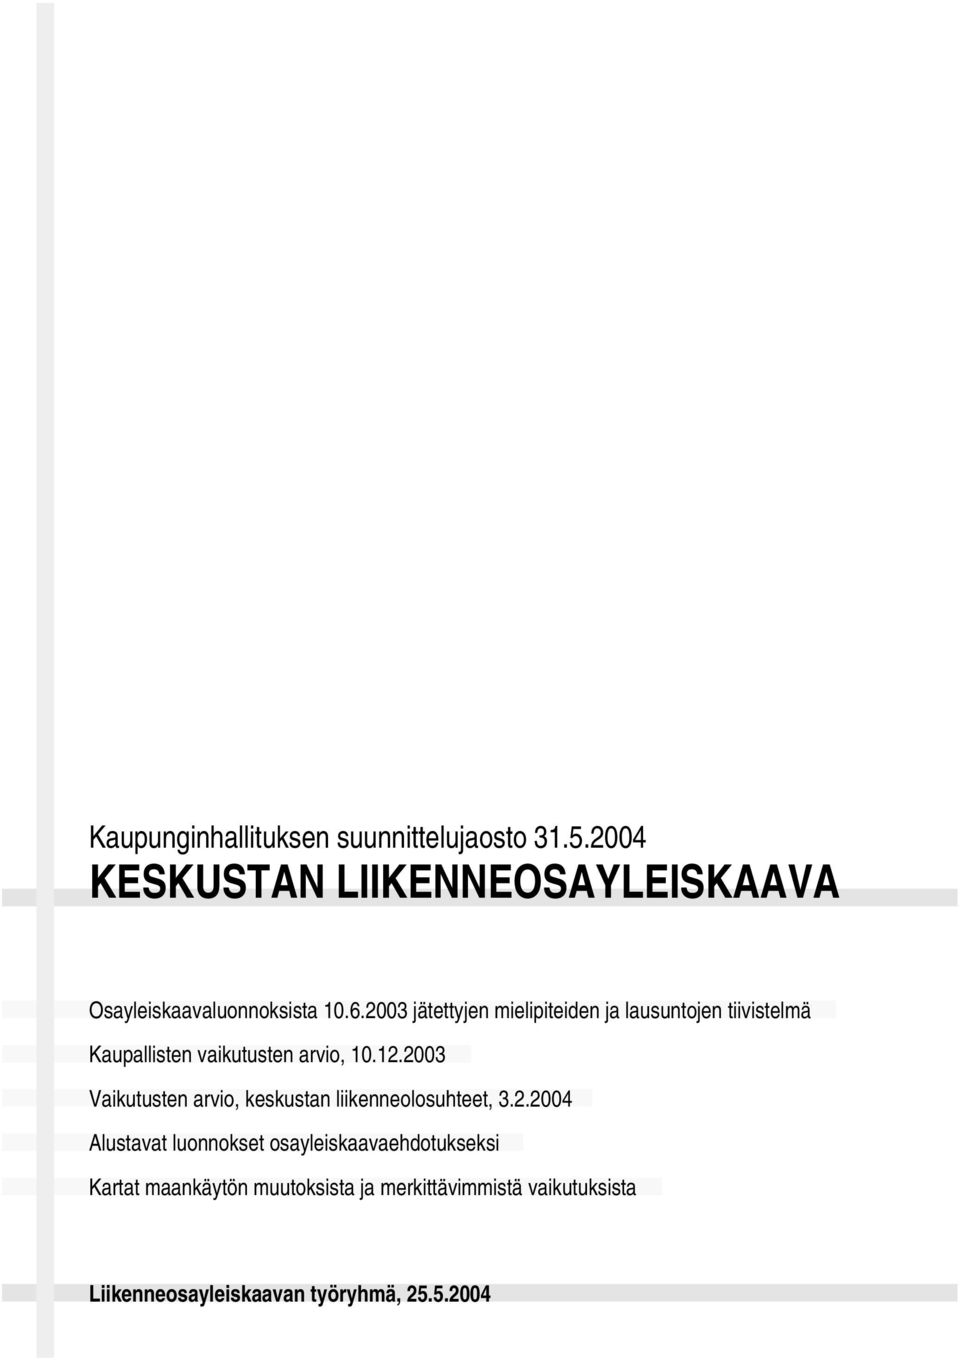 2003 jätettyjen mielipiteiden ja lausuntojen tiivistelmä Kaupallisten vaikutusten arvio, 10.12.